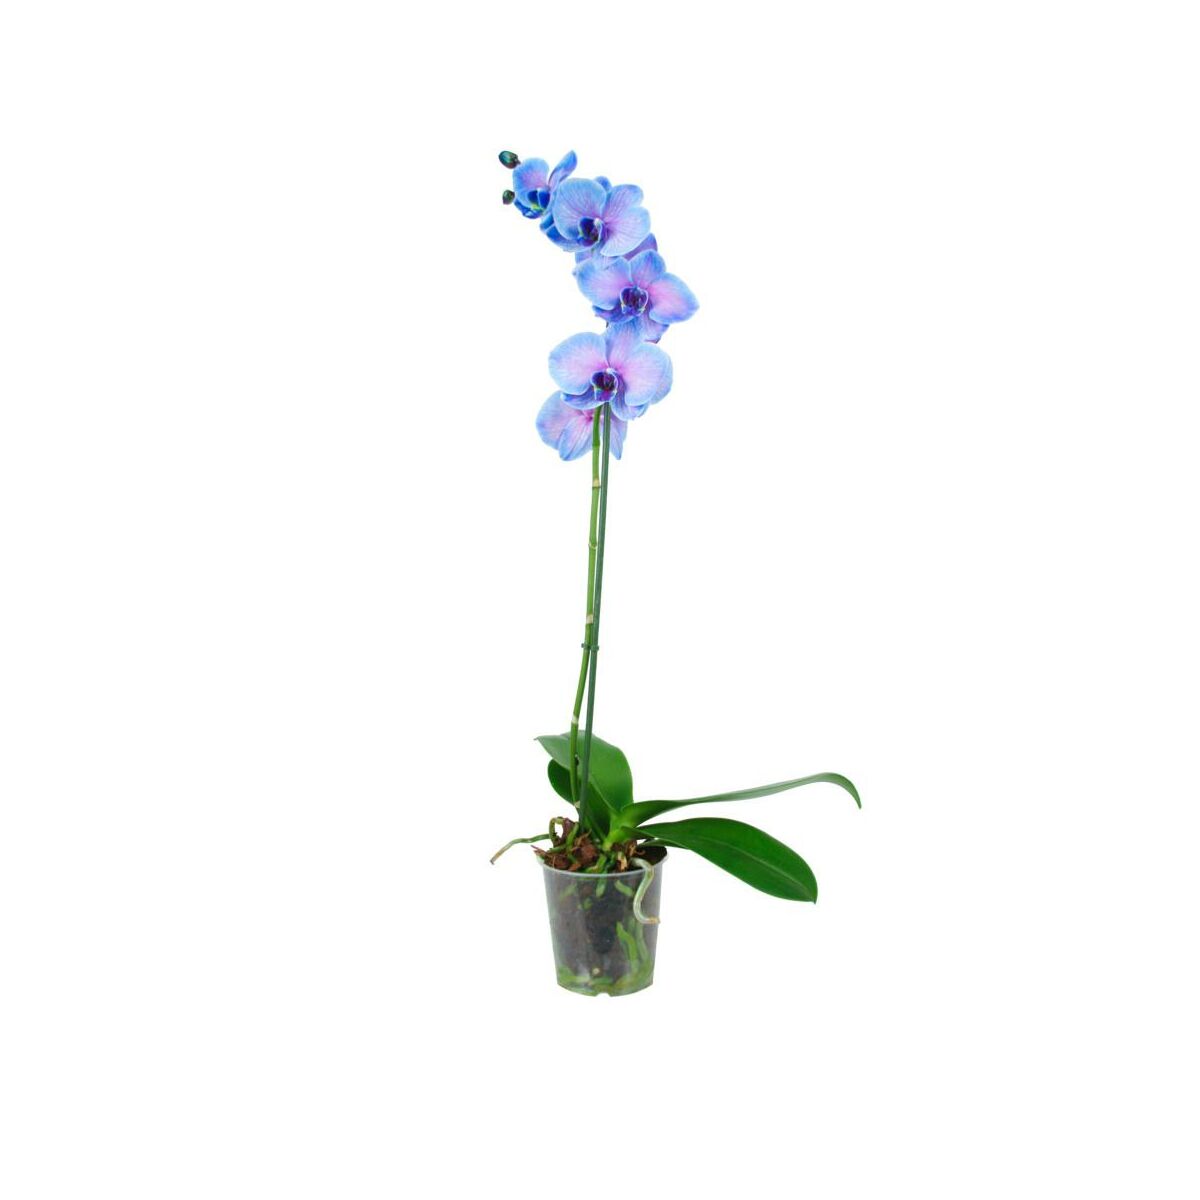 Storczyk Niebieski Falenopsis 1 Ped 60 70 Cm Rosliny Kwitnace W Atrakcyjnej Cenie W Sklepach Leroy Merlin